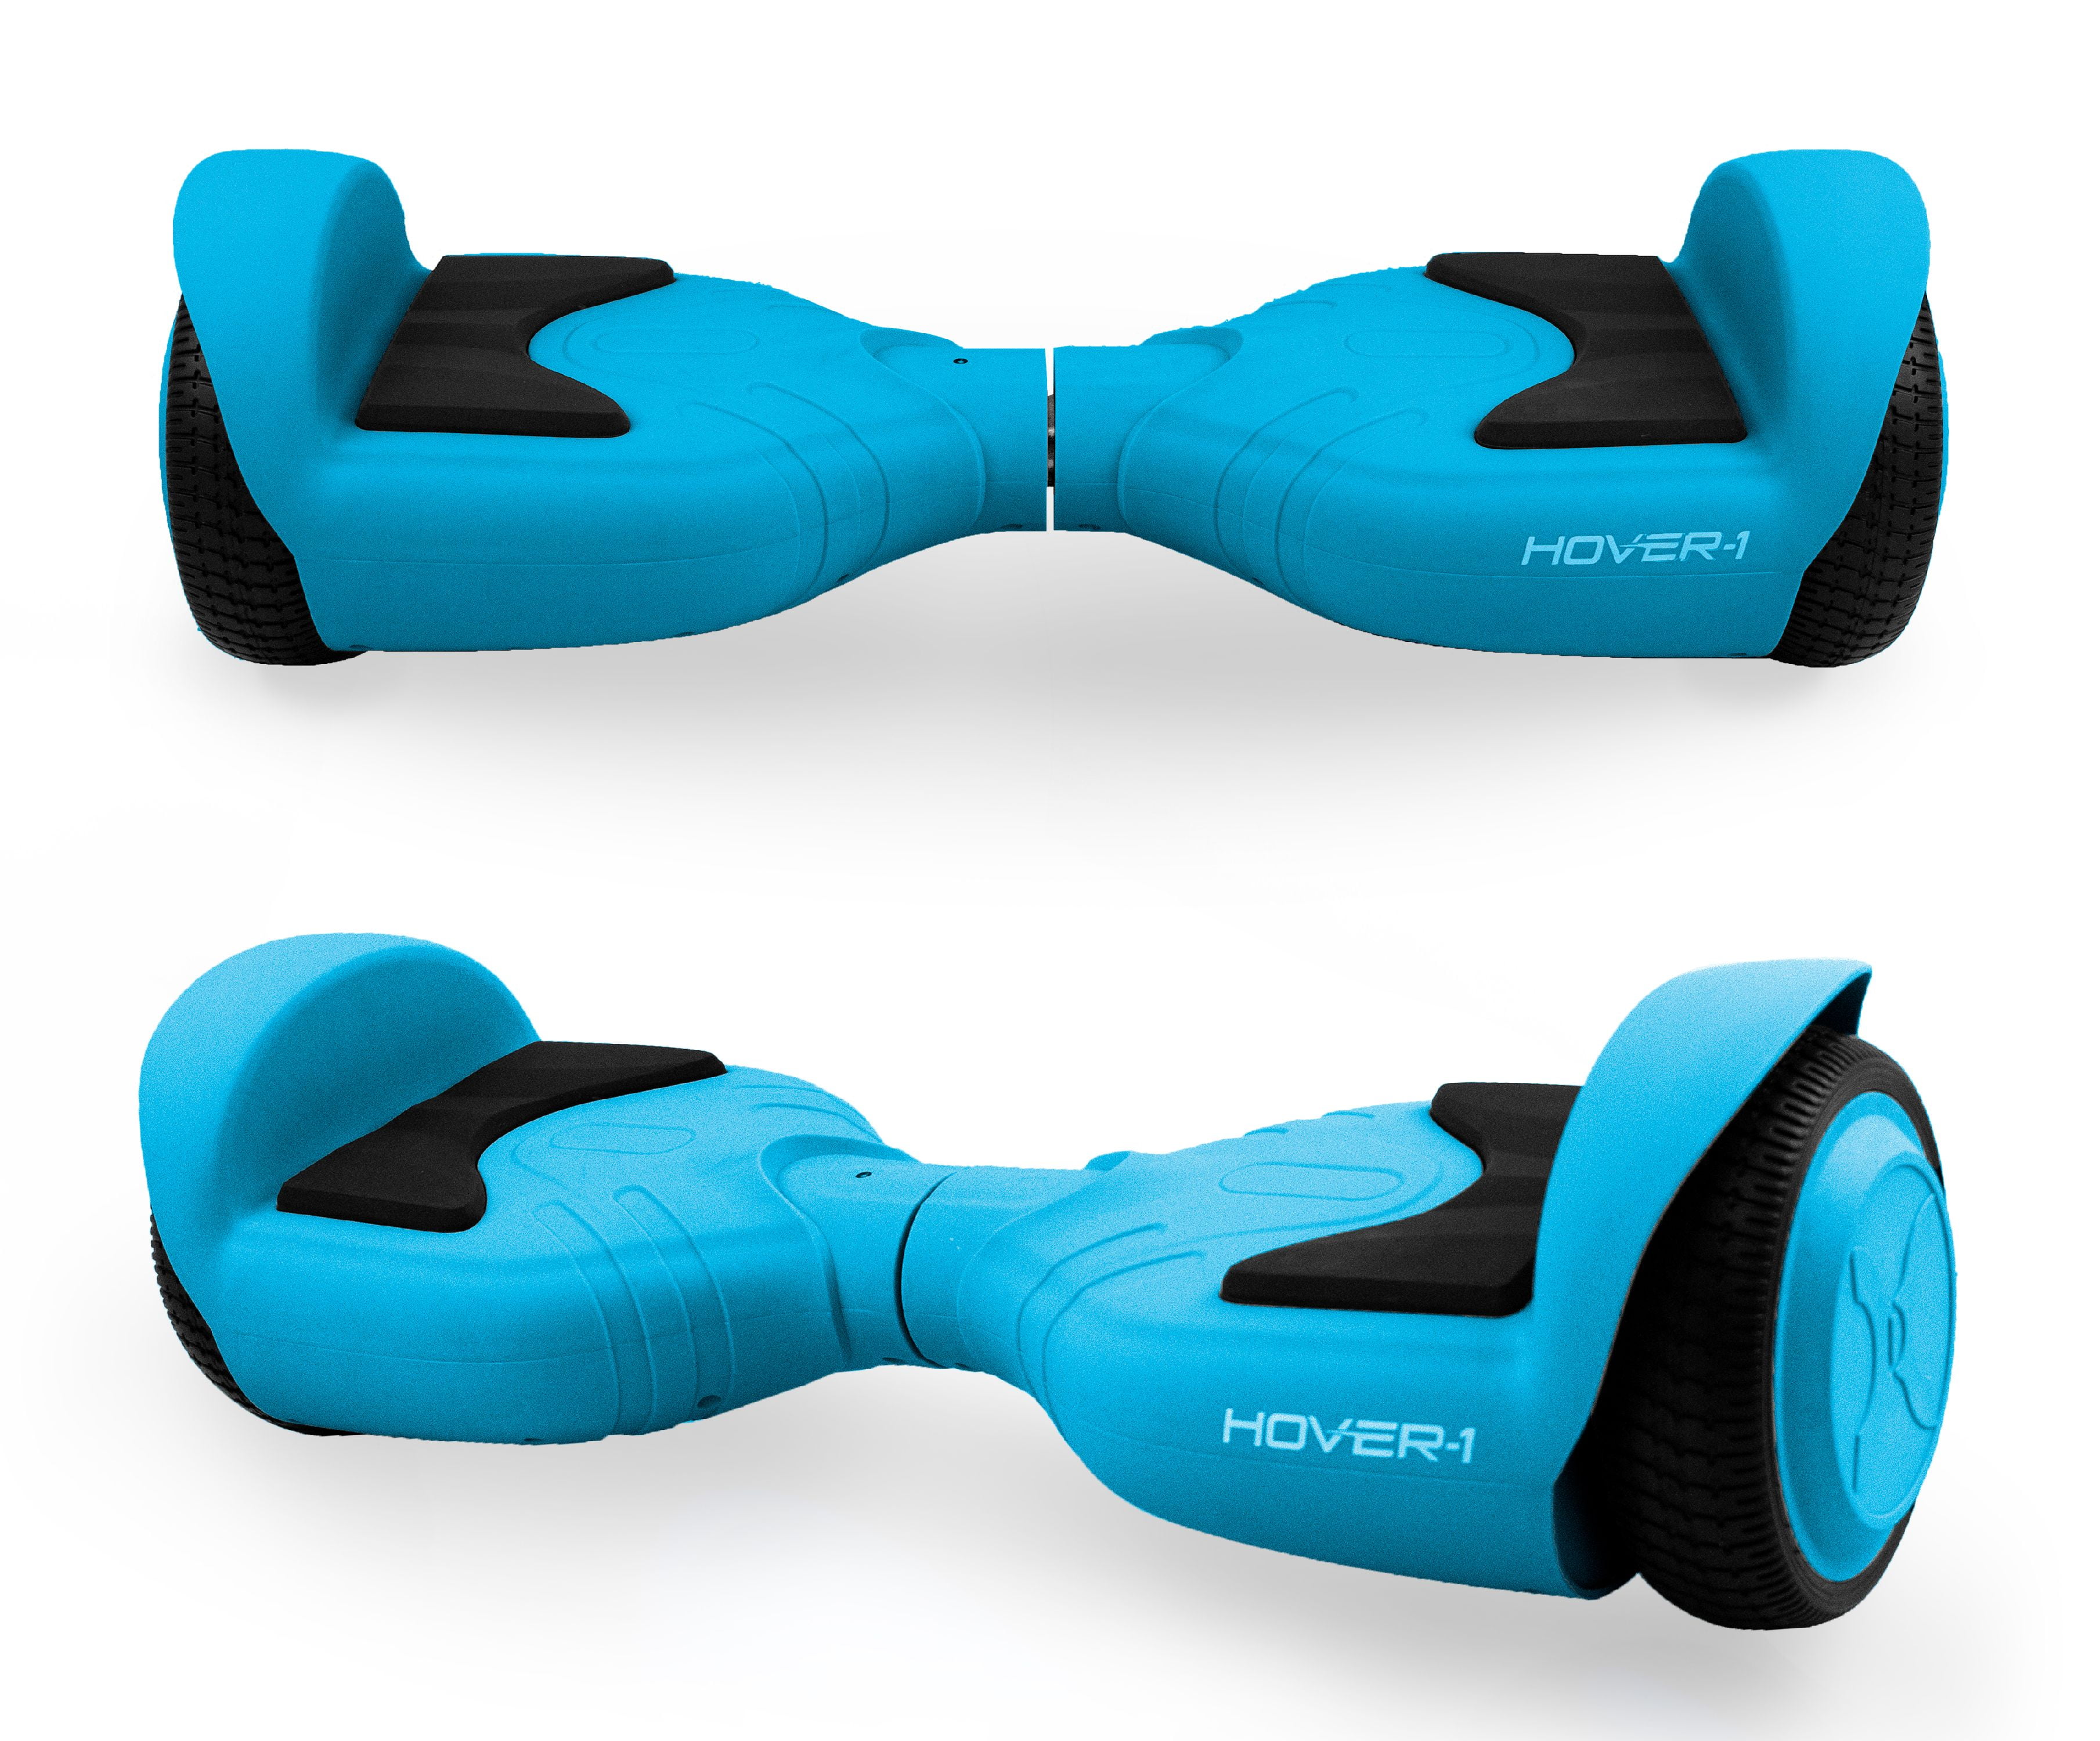 Сиденье для ХОВЕРБОРДА. Ховерборд кресло. Foxtech Hover 1. Xhover-1.